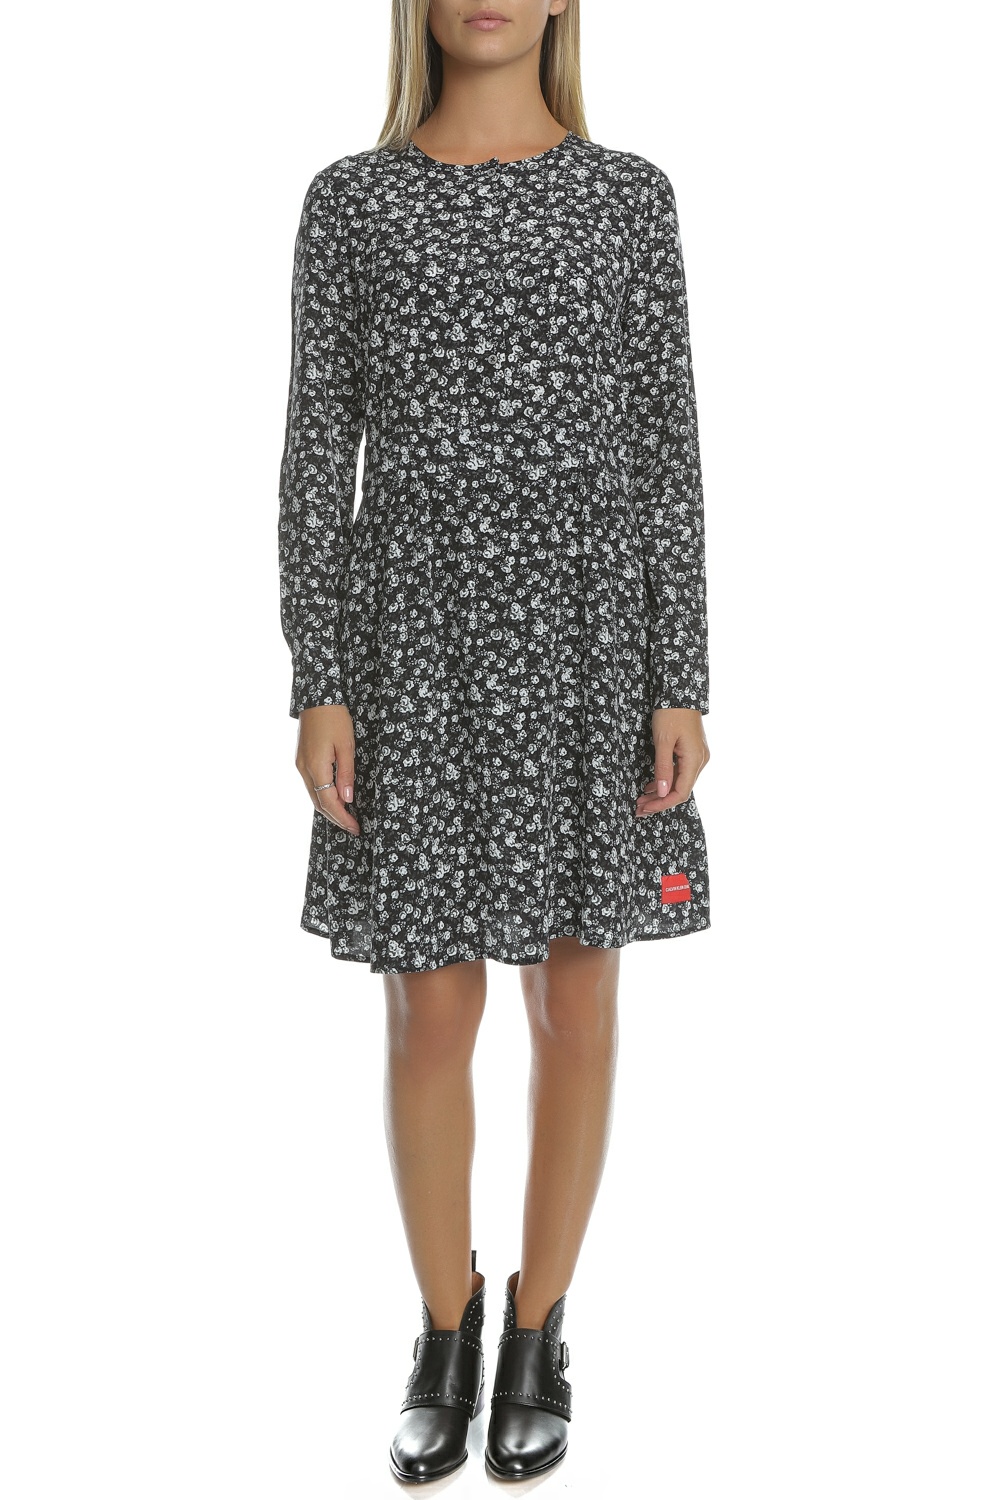 Γυναικεία/Ρούχα/Φόρεματα/Μέχρι το γόνατο CALVIN KLEIN JEANS - Γυναικείο midi φόρεμα FLOWER PRINT CALVIN KLEIN JEANS μαύρο-λευκό